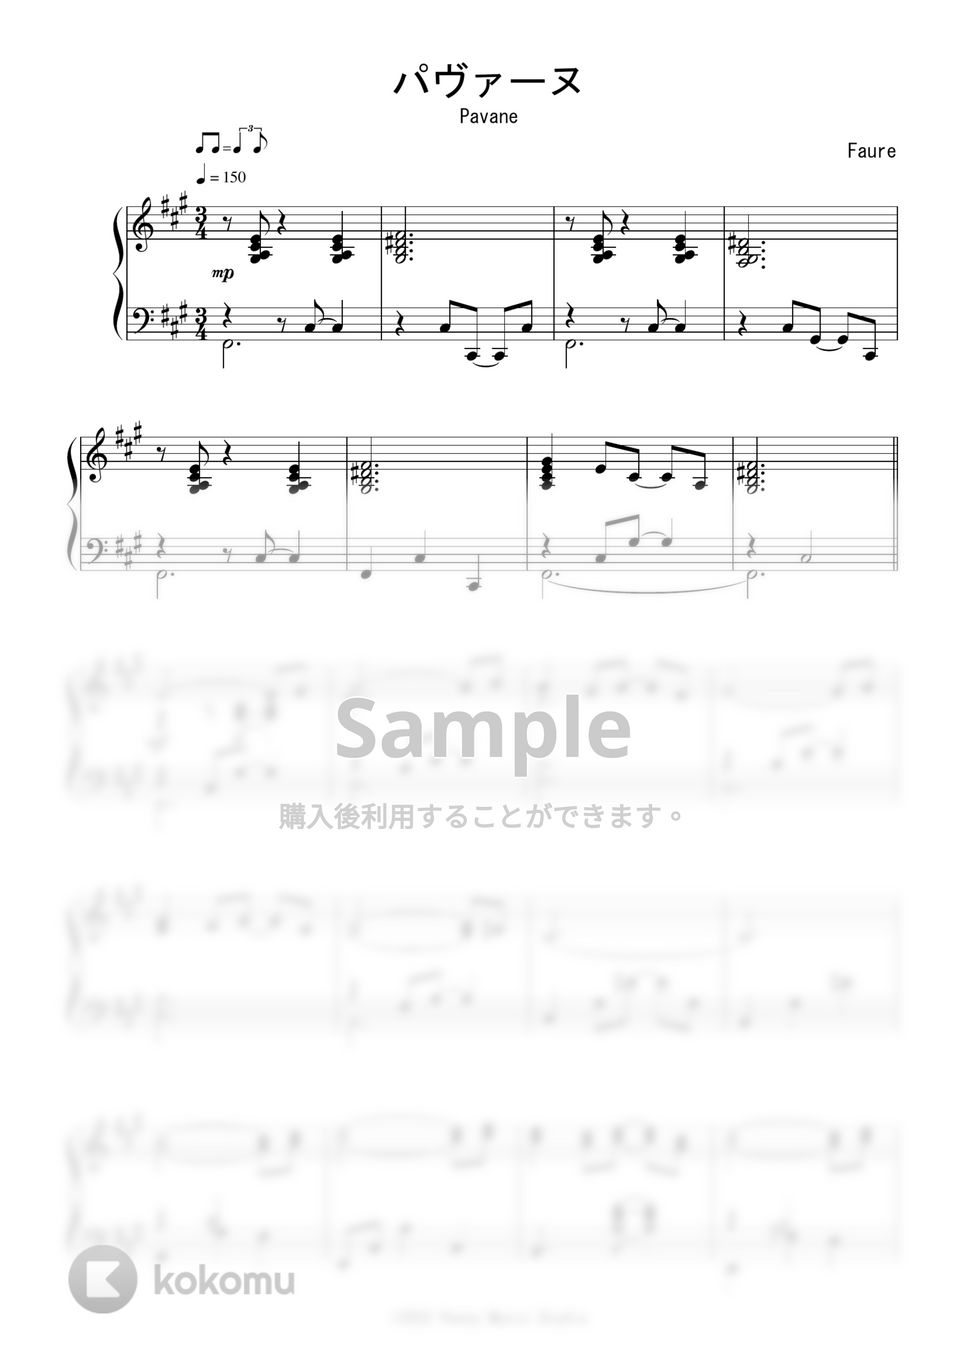 フォーレ - パヴァーヌ (Jazz Waltz Ver.) by Peony